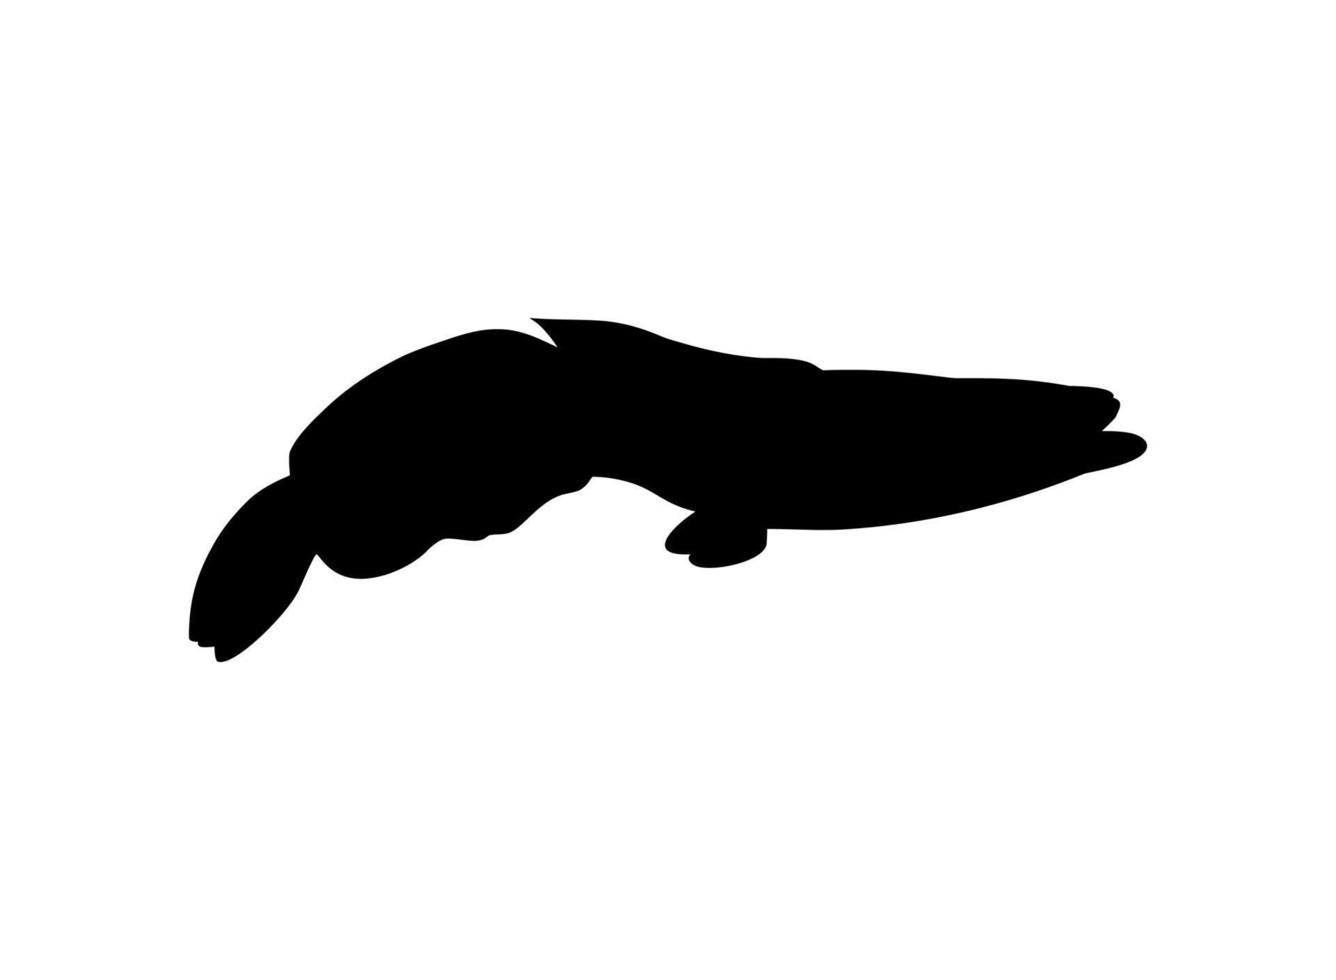 peixe cabeça de cobra, família de peixes perciformes de água doce channidae, silhueta para logotipo, pictograma ou elemento de design gráfico. ilustração vetorial vetor